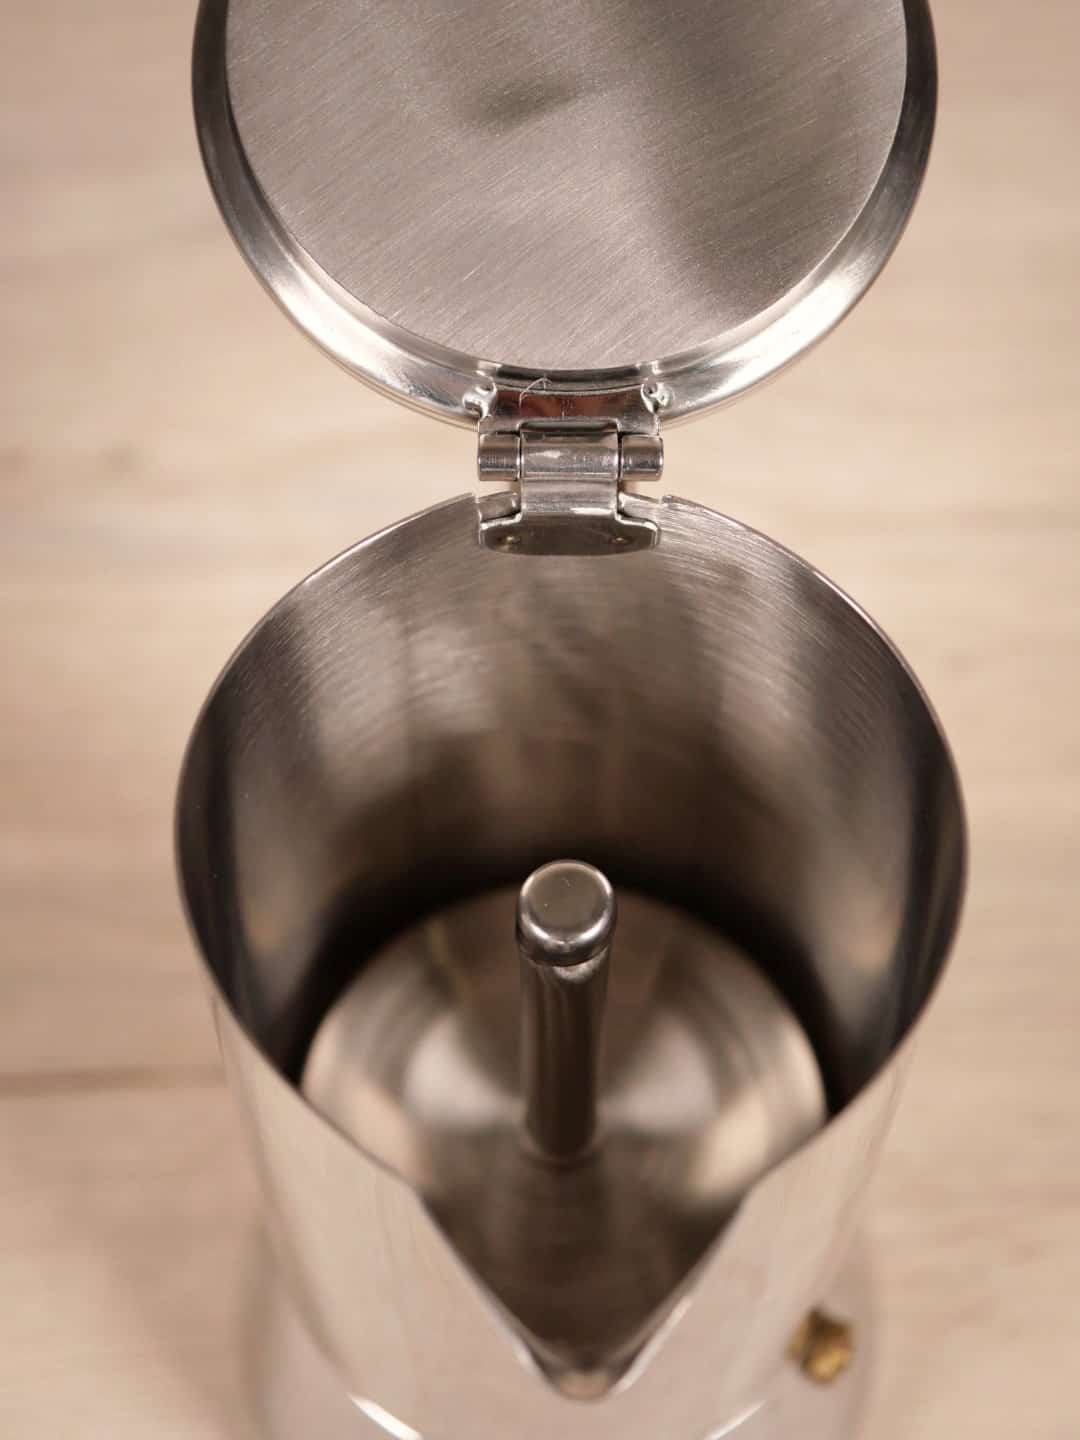 Espressokocher 6 Tassen - Nando - Silber - Kaffeezubereiter - Gefu